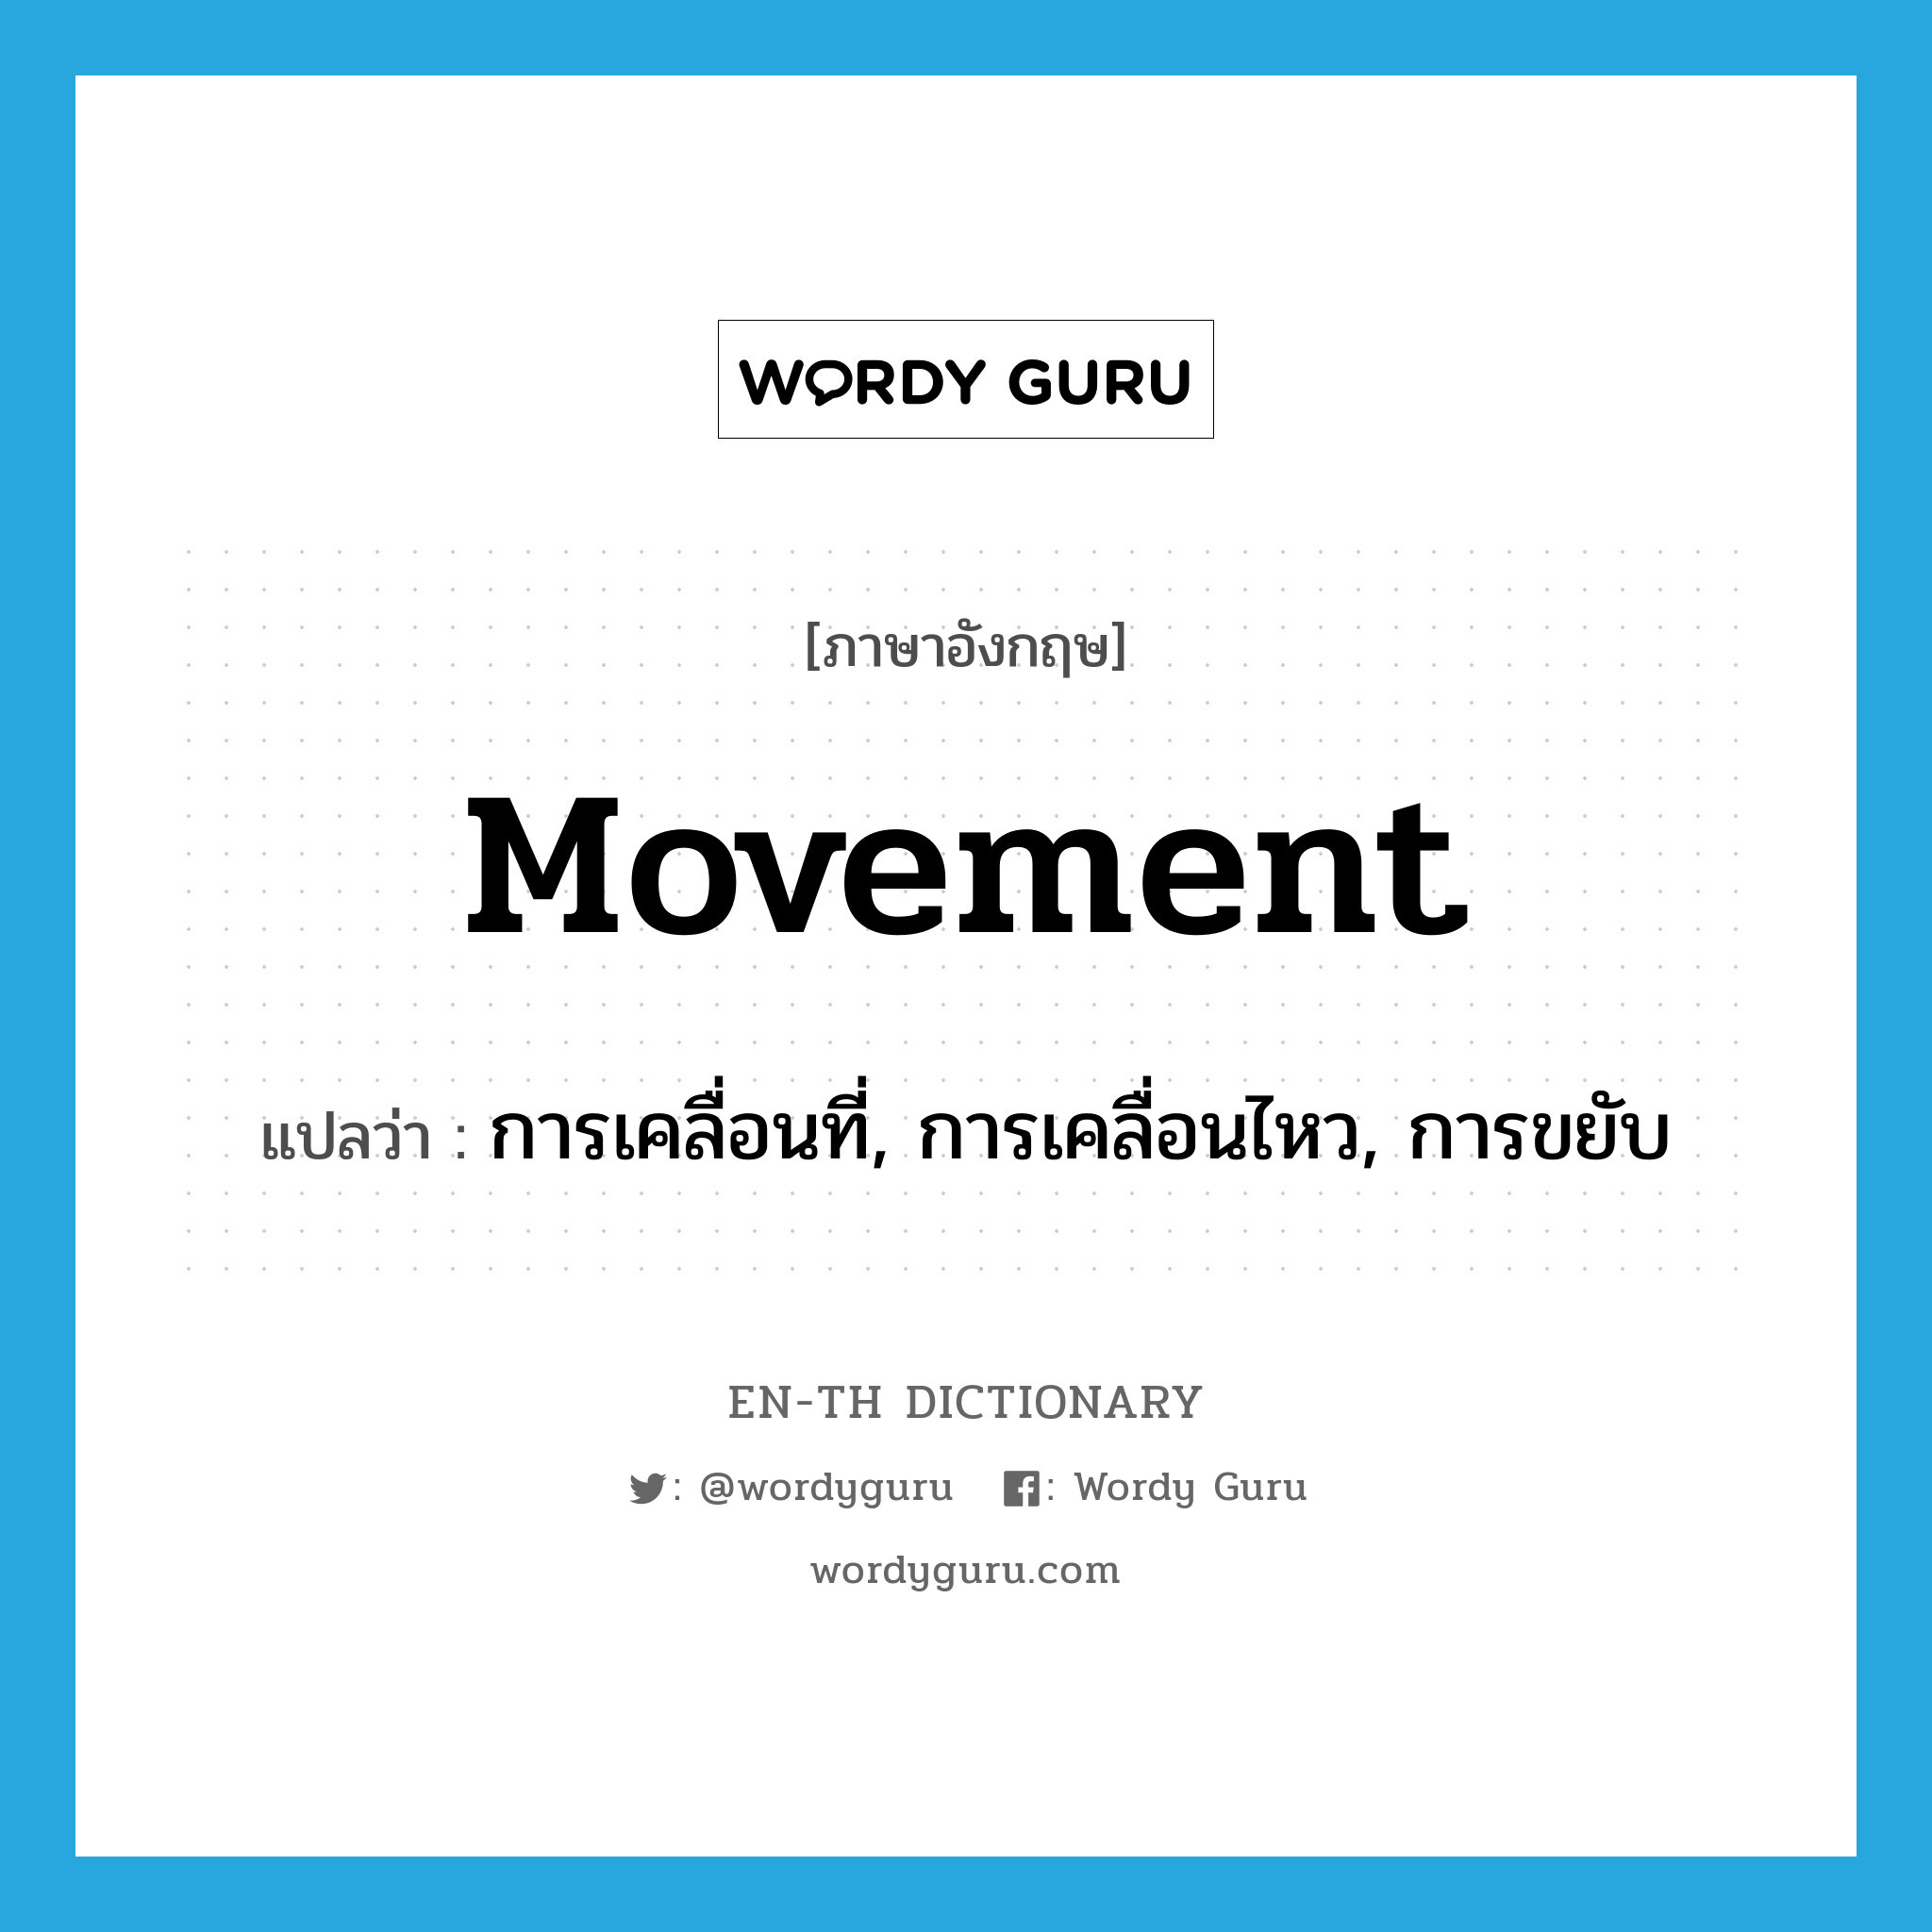 การเคลื่อนที่, การเคลื่อนไหว, การขยับ ภาษาอังกฤษ?, คำศัพท์ภาษาอังกฤษ การเคลื่อนที่, การเคลื่อนไหว, การขยับ แปลว่า movement ประเภท N หมวด N